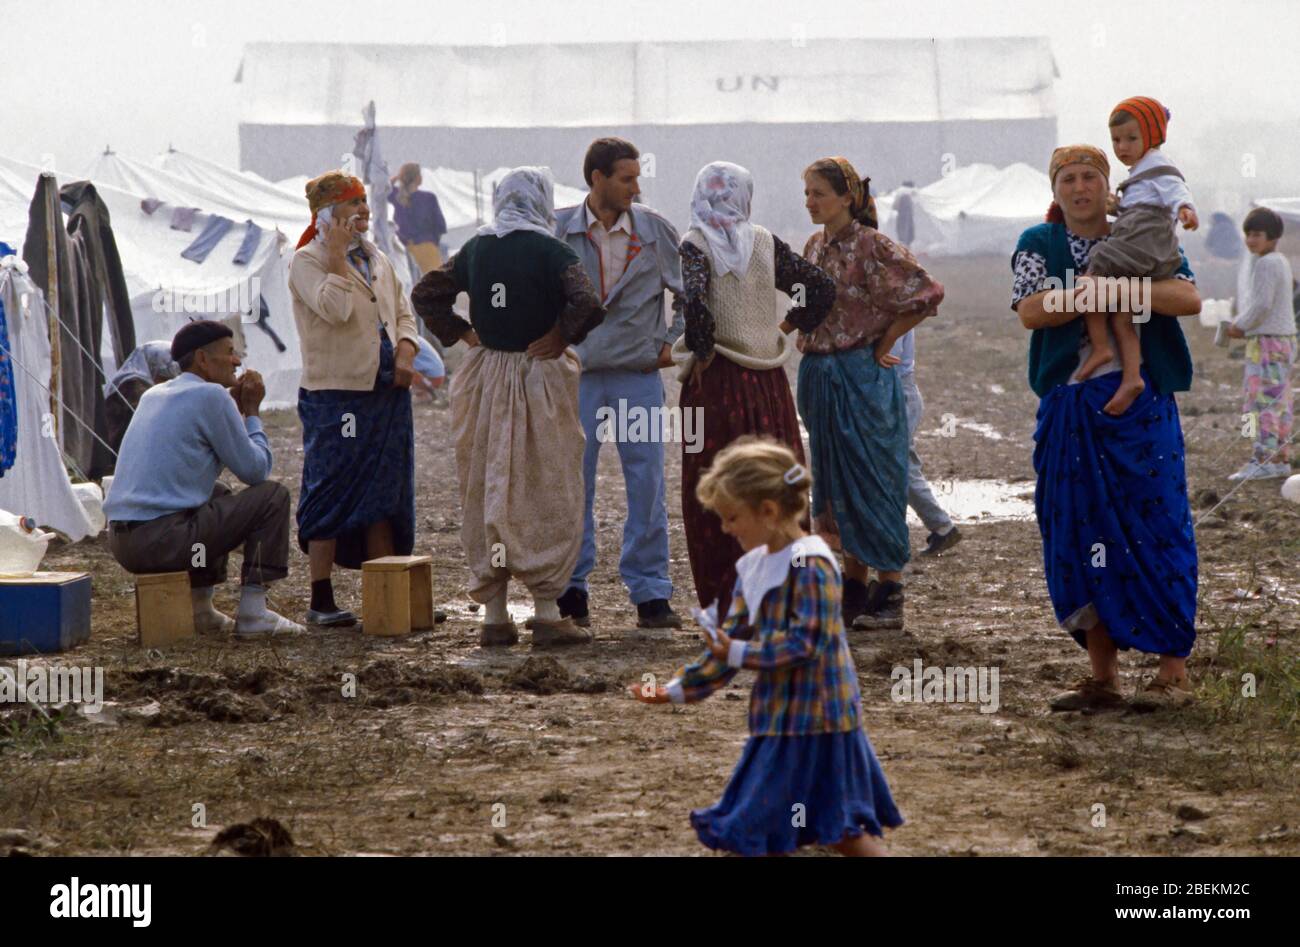 1995 Tuzla - Flugplatz Tuzla UN-Flüchtlingslager für bosnische Muslime, die vor dem Massaker von Srebrenica während des Bosnienkrieges fliehen Stockfoto